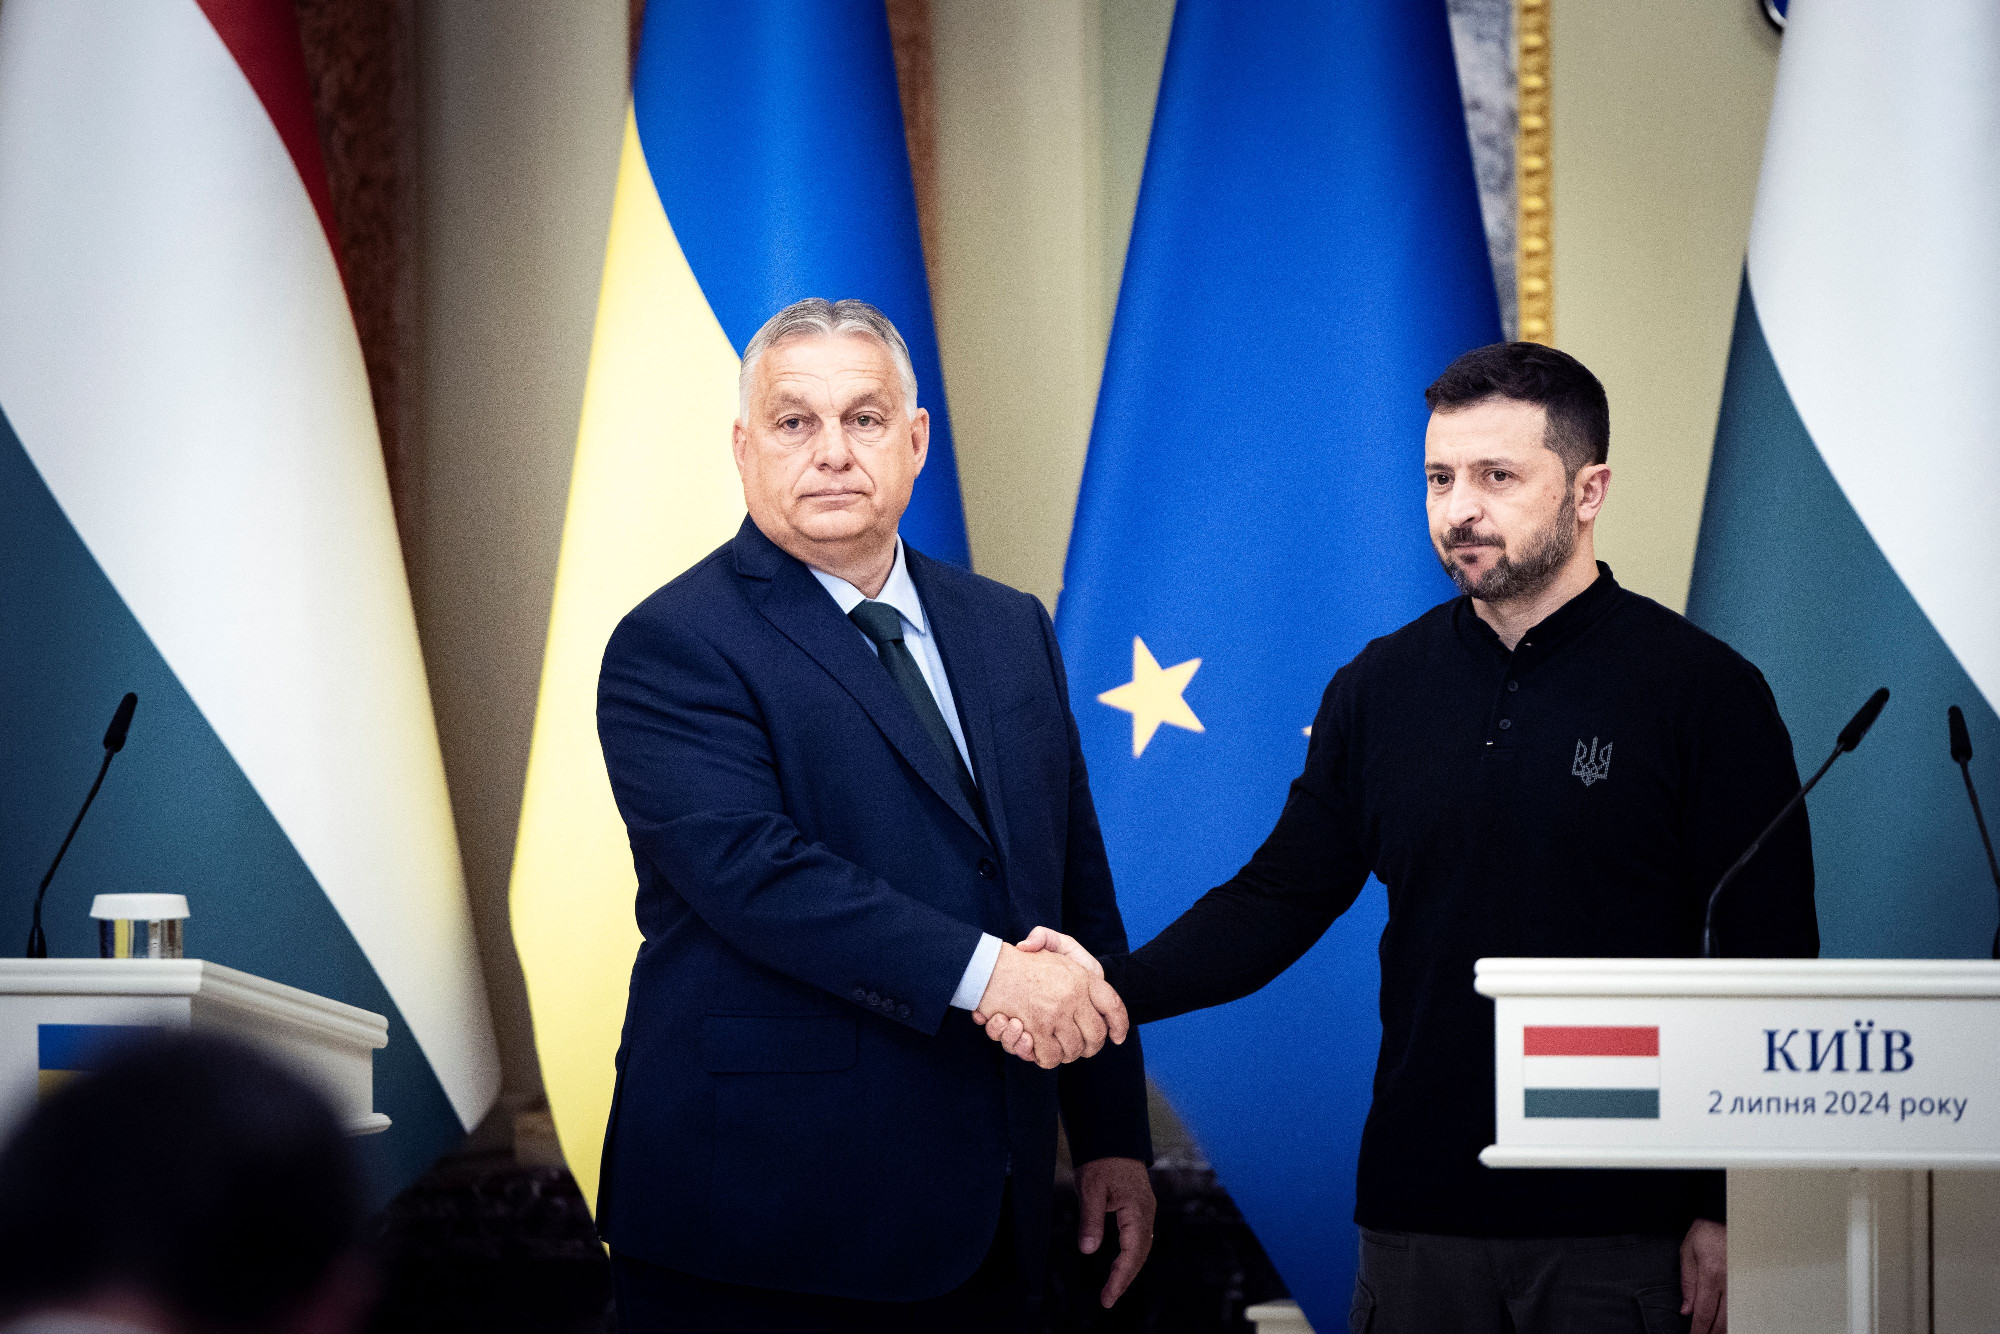 Rácz András: Irreális Orbán kijevi javaslata a határidőhöz kötött tűzszünetről